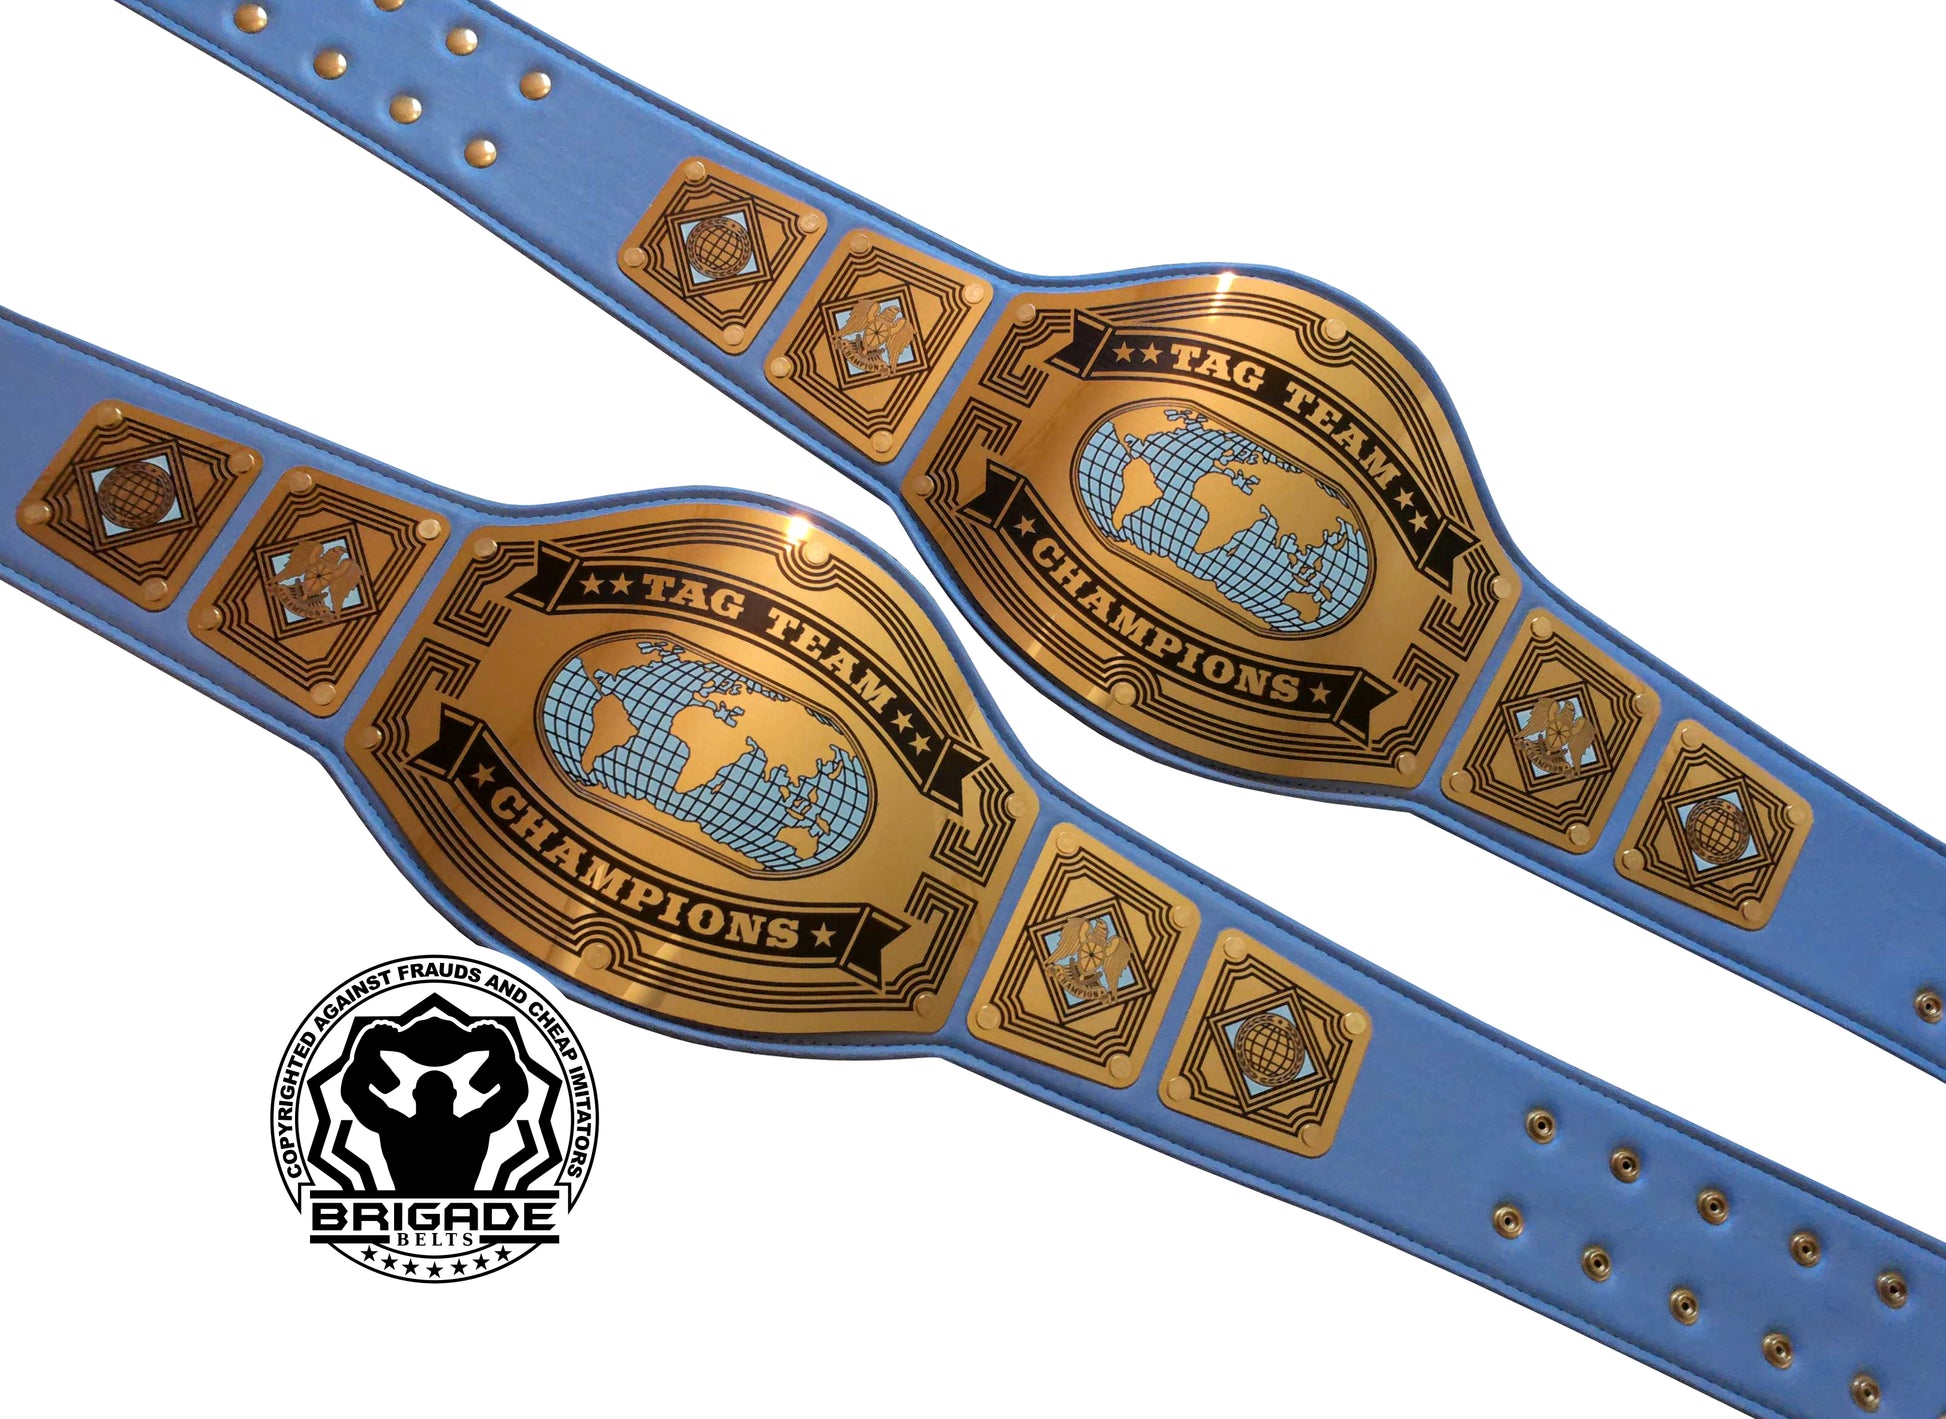 wwe belts tag team